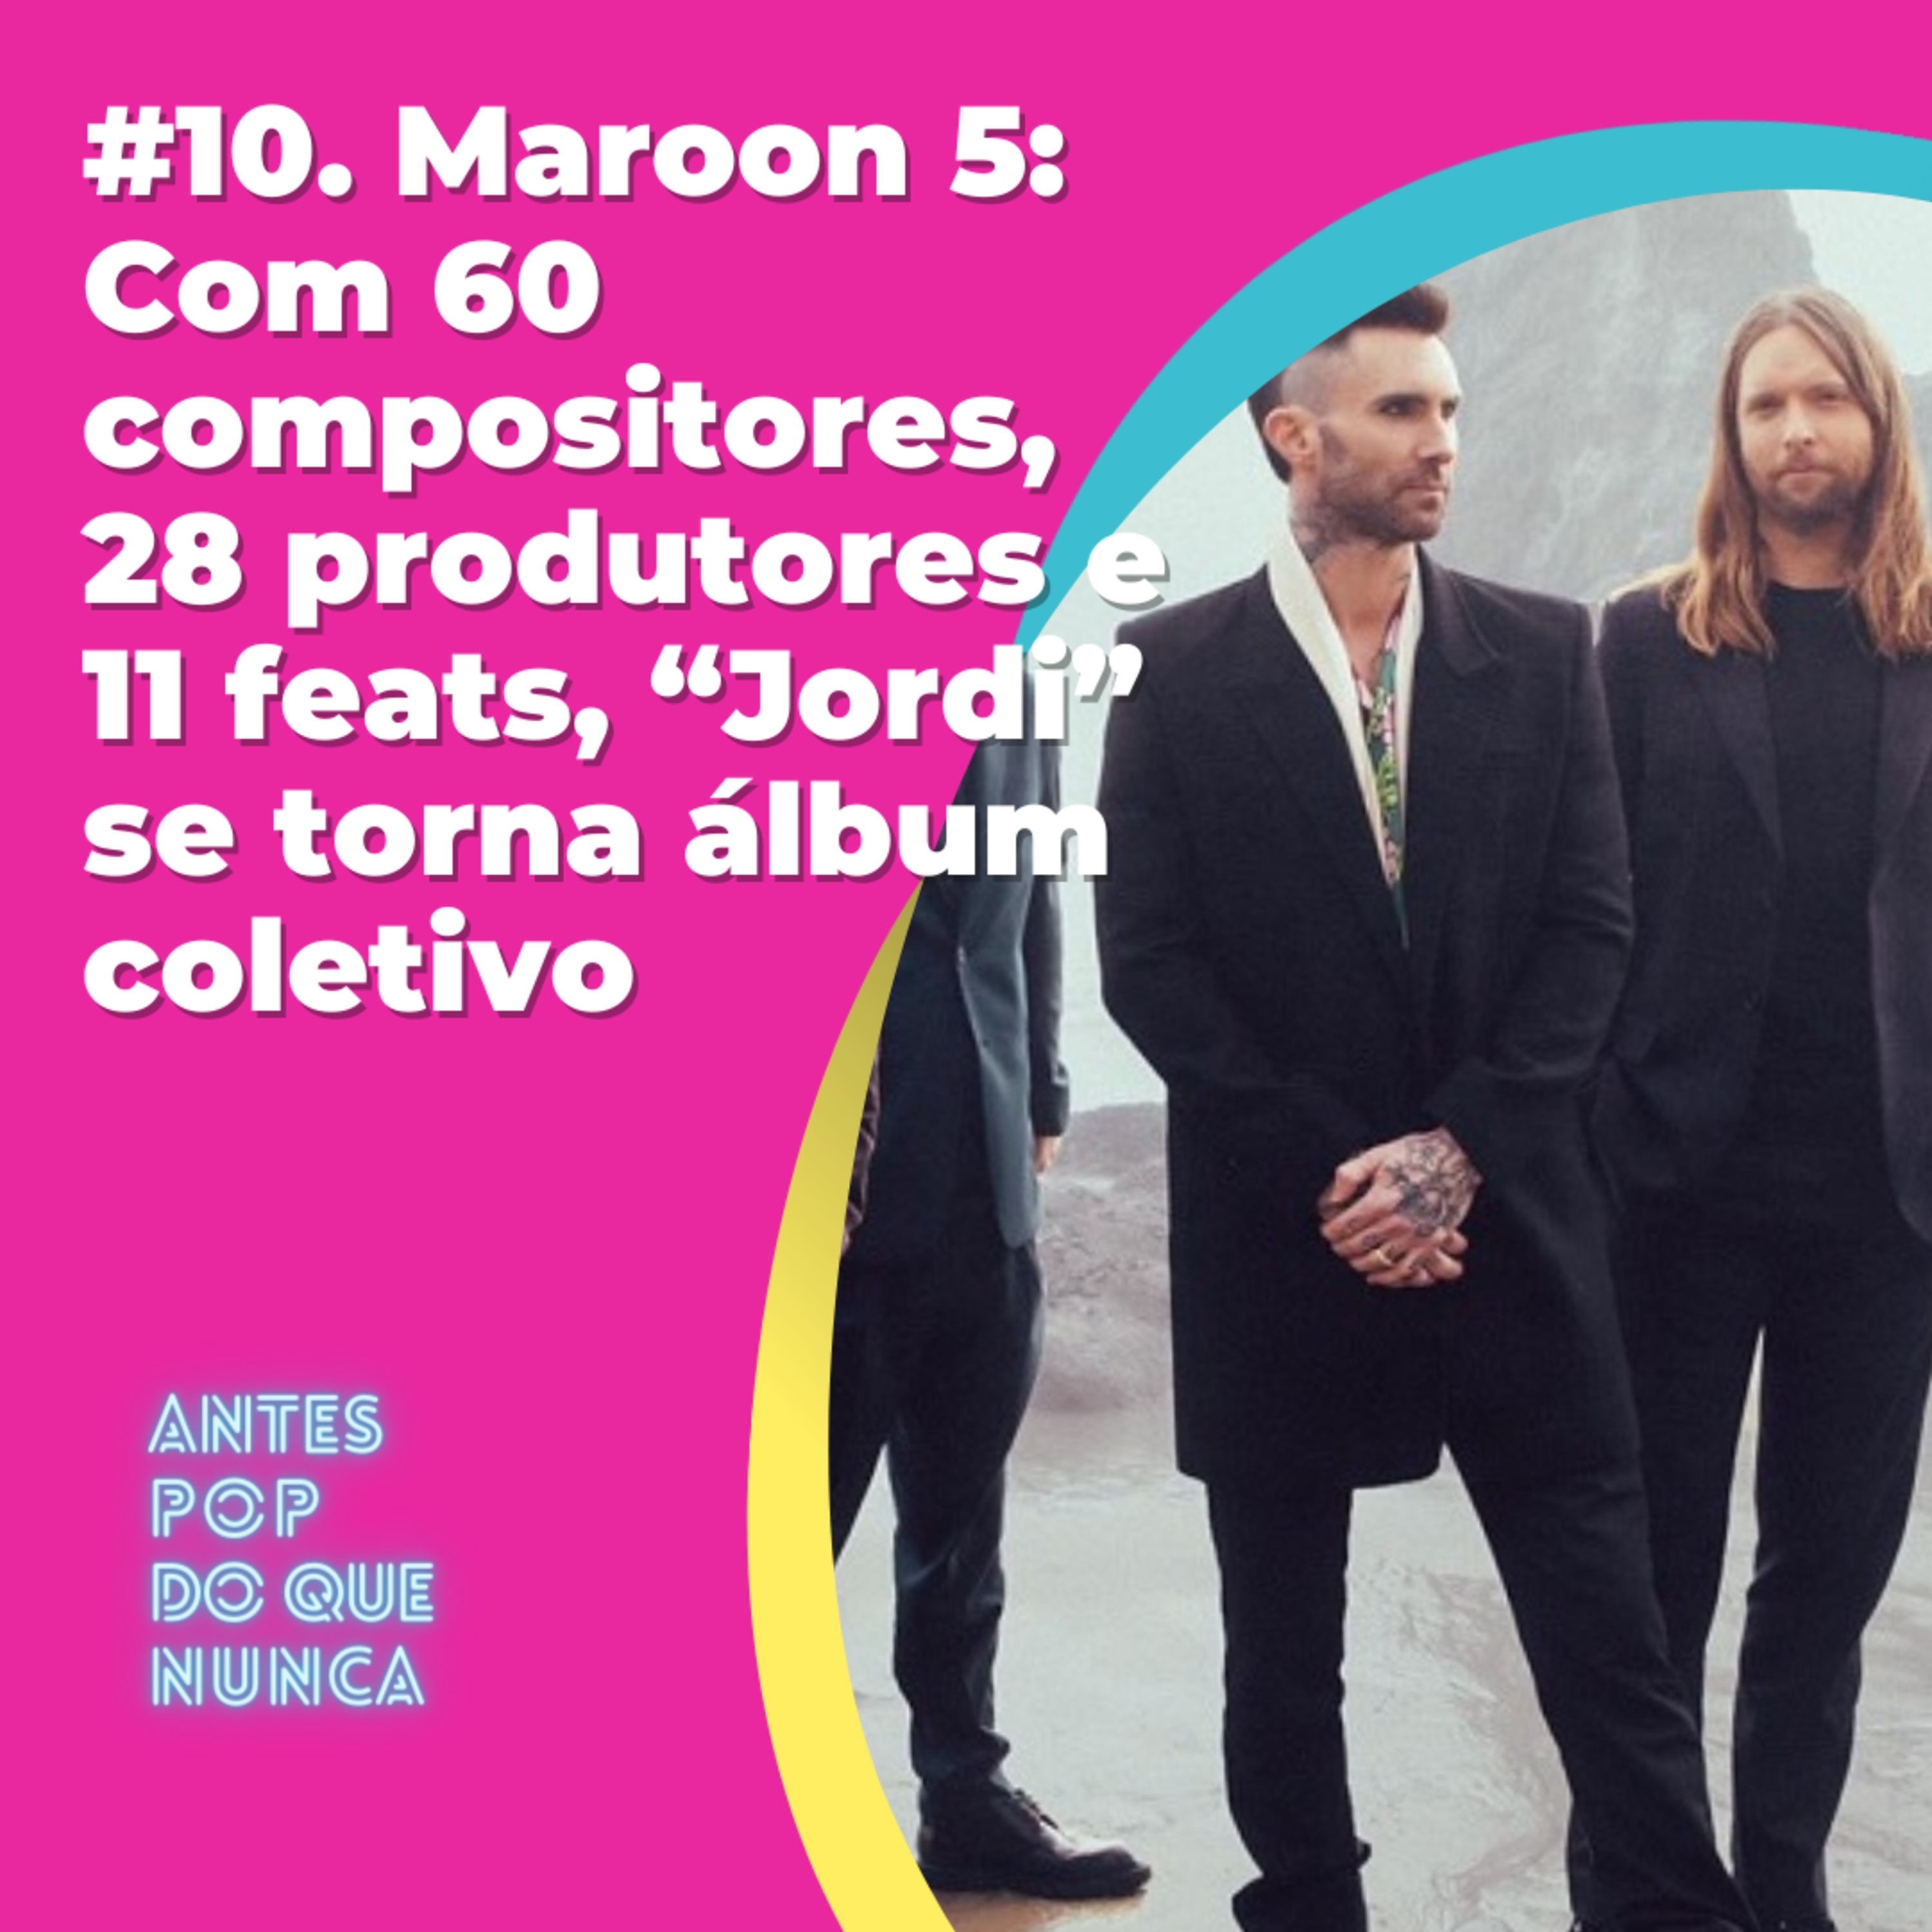 #11. Maroon 5: Com 60 compositores, 28 produtores e 11 feats, “Jordi” se torna álbum coletivo